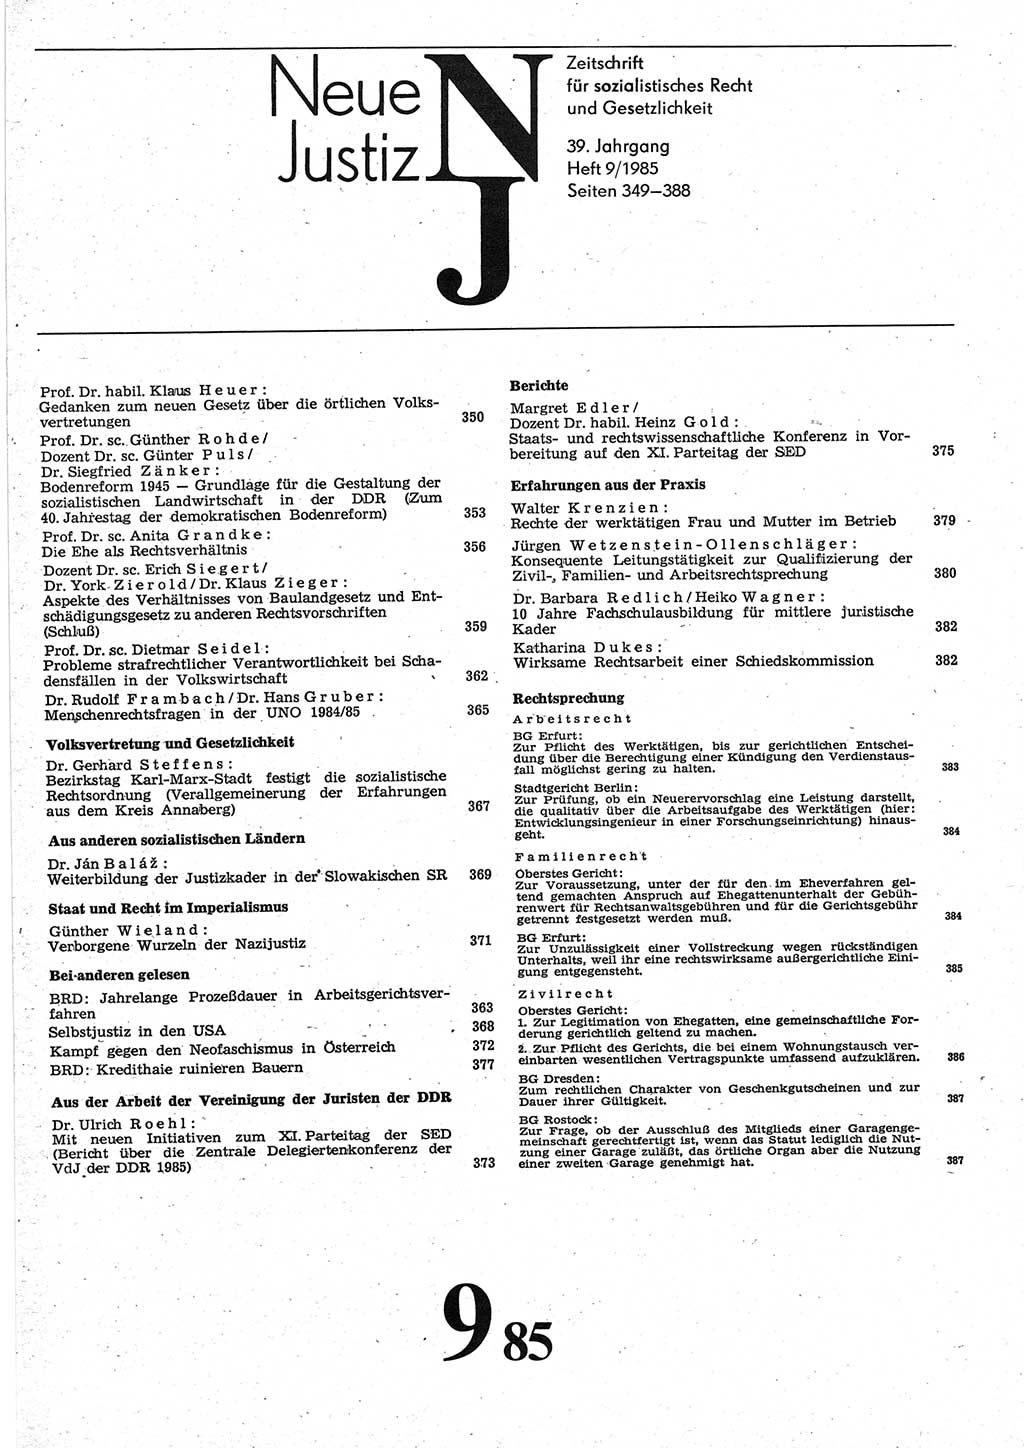 Neue Justiz (NJ), Zeitschrift für sozialistisches Recht und Gesetzlichkeit [Deutsche Demokratische Republik (DDR)], 39. Jahrgang 1985, Seite 349 (NJ DDR 1985, S. 349)